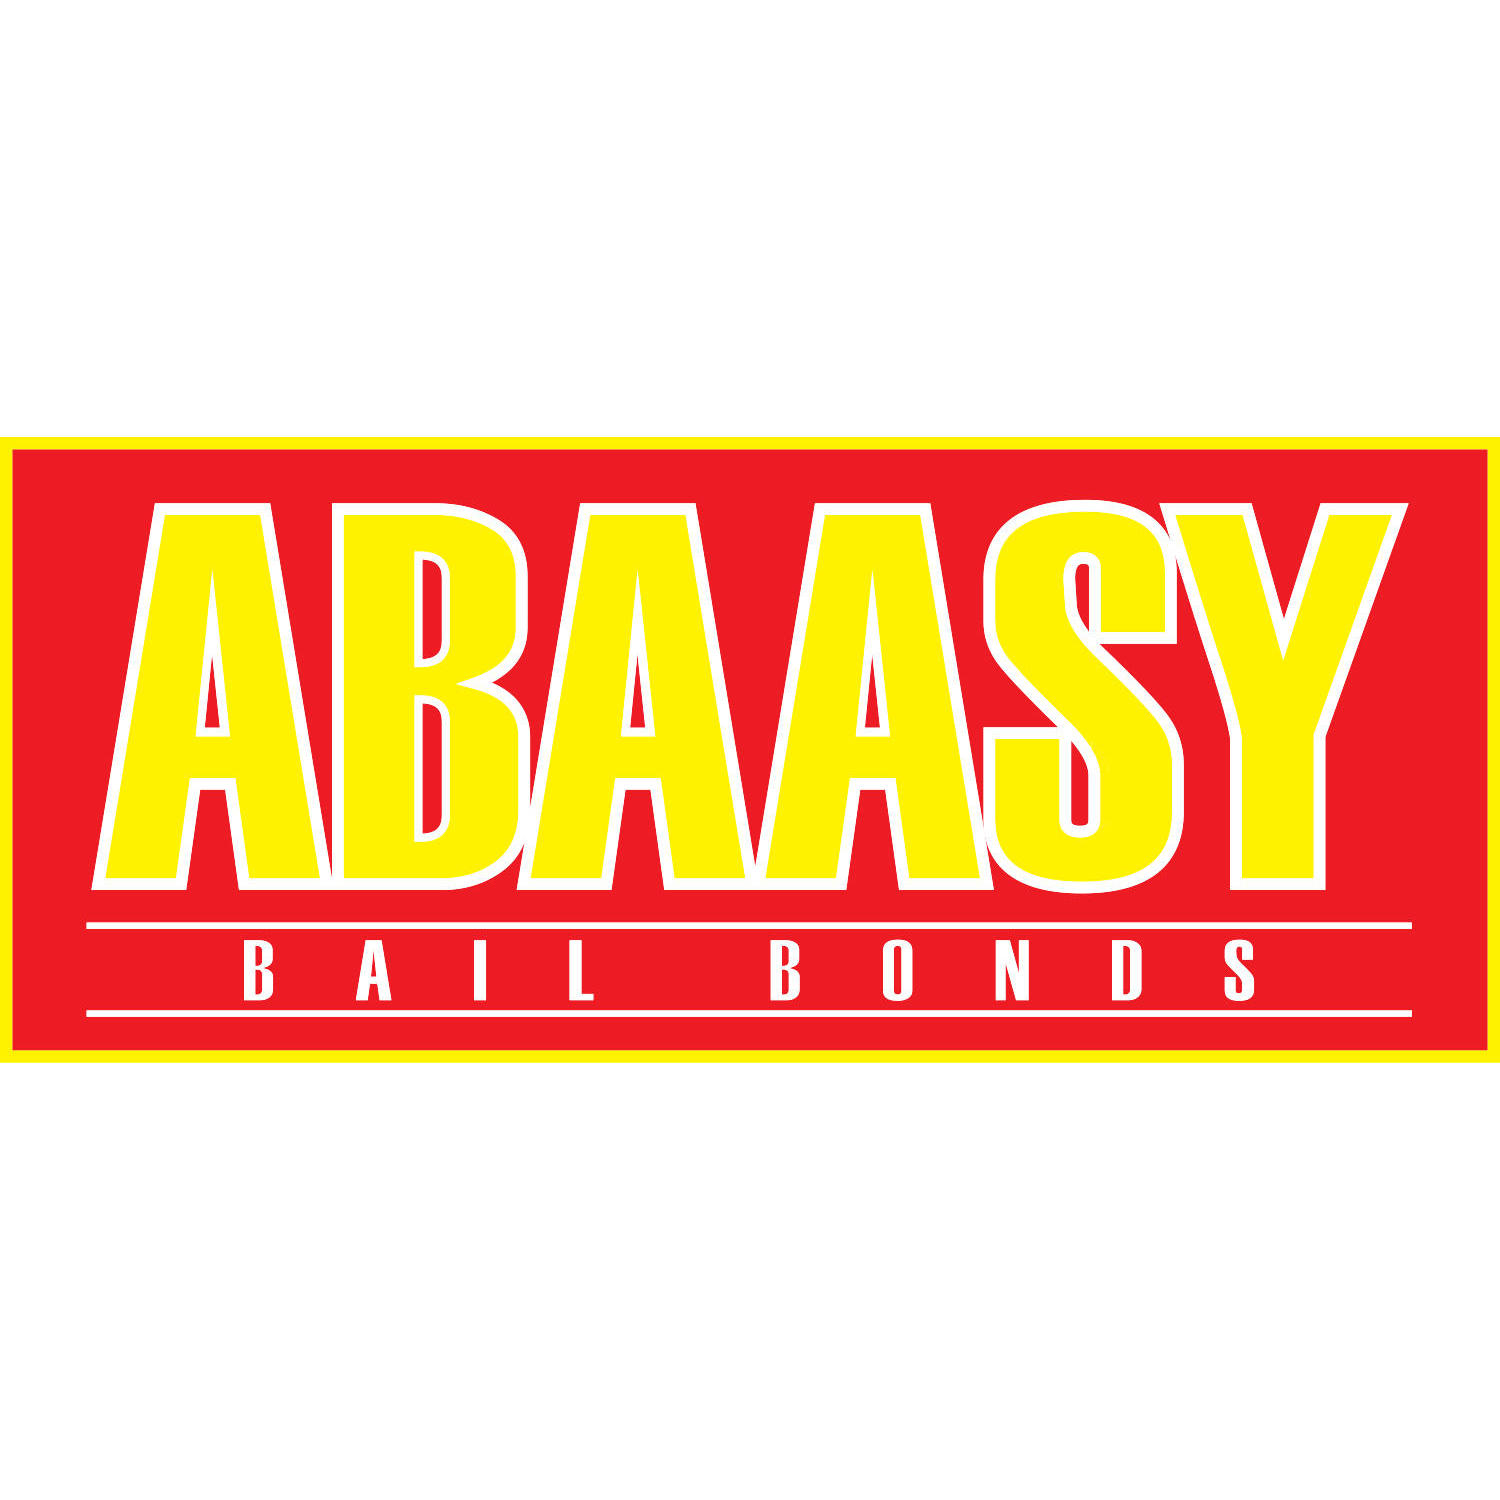 Abaasy Bail Bonds San Diego Logo